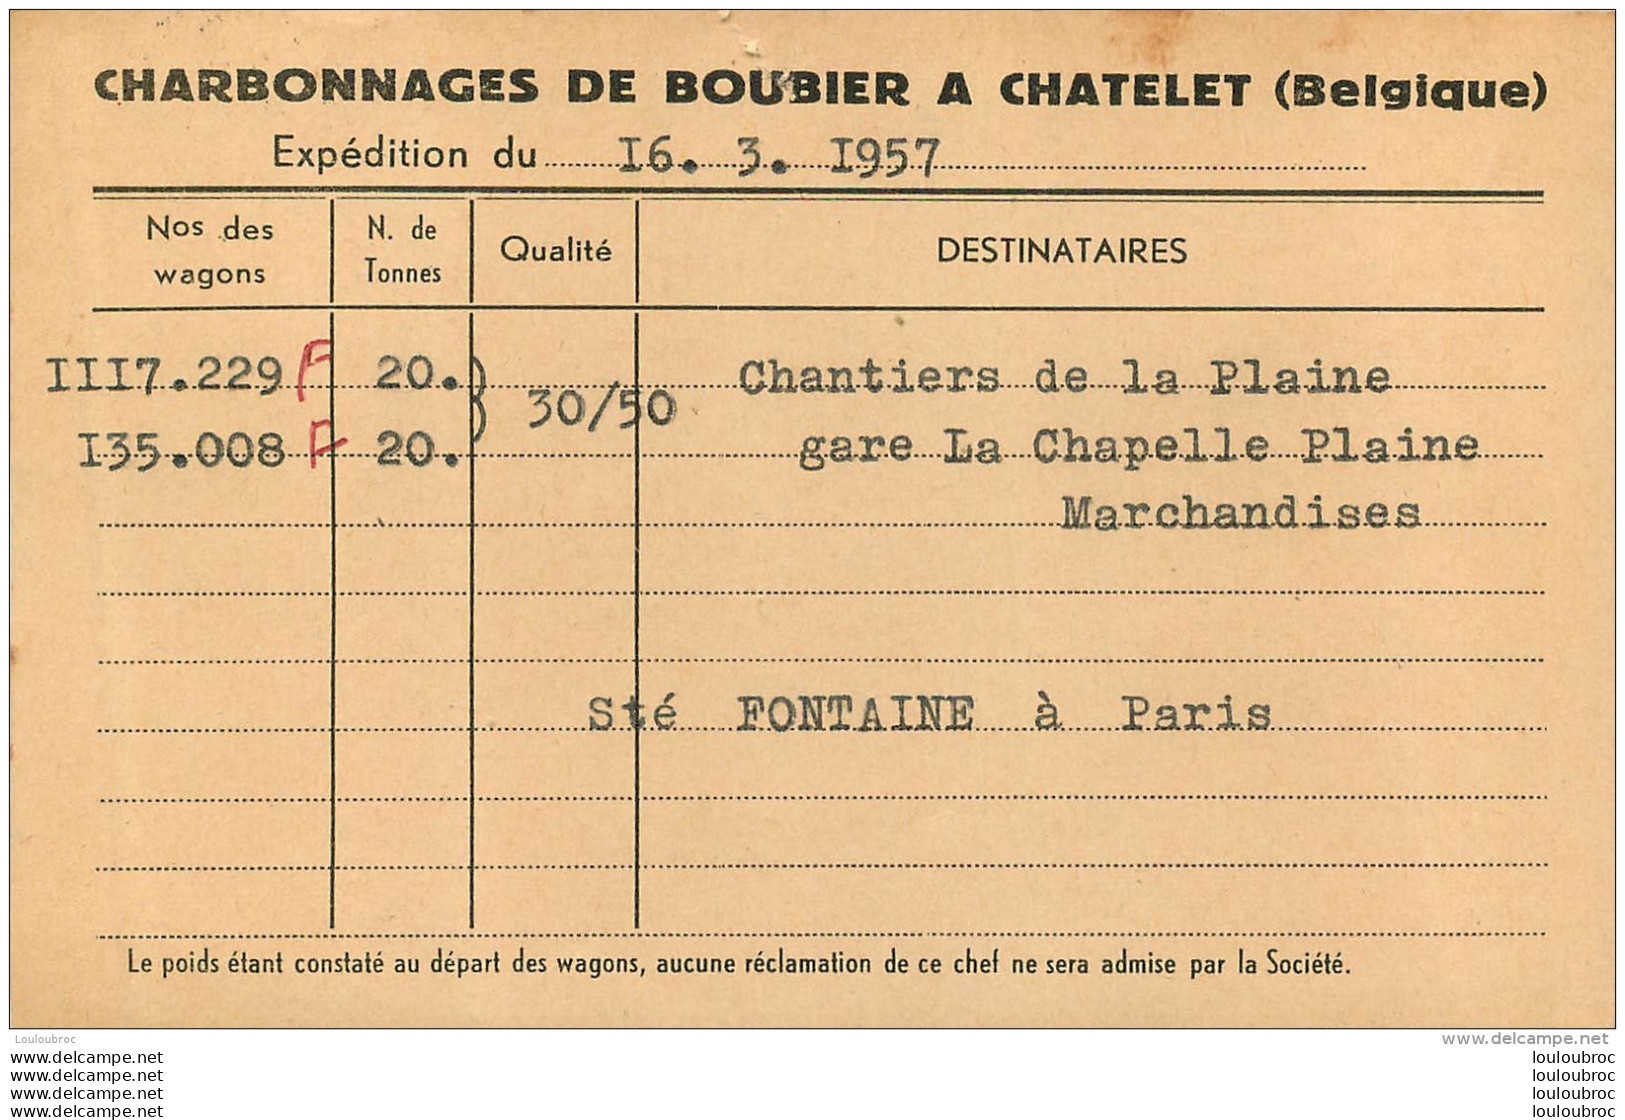 CHATELET  CHARBONNAGES DE BOUBIER 1957  CARTE EXPEDITION - Châtelet